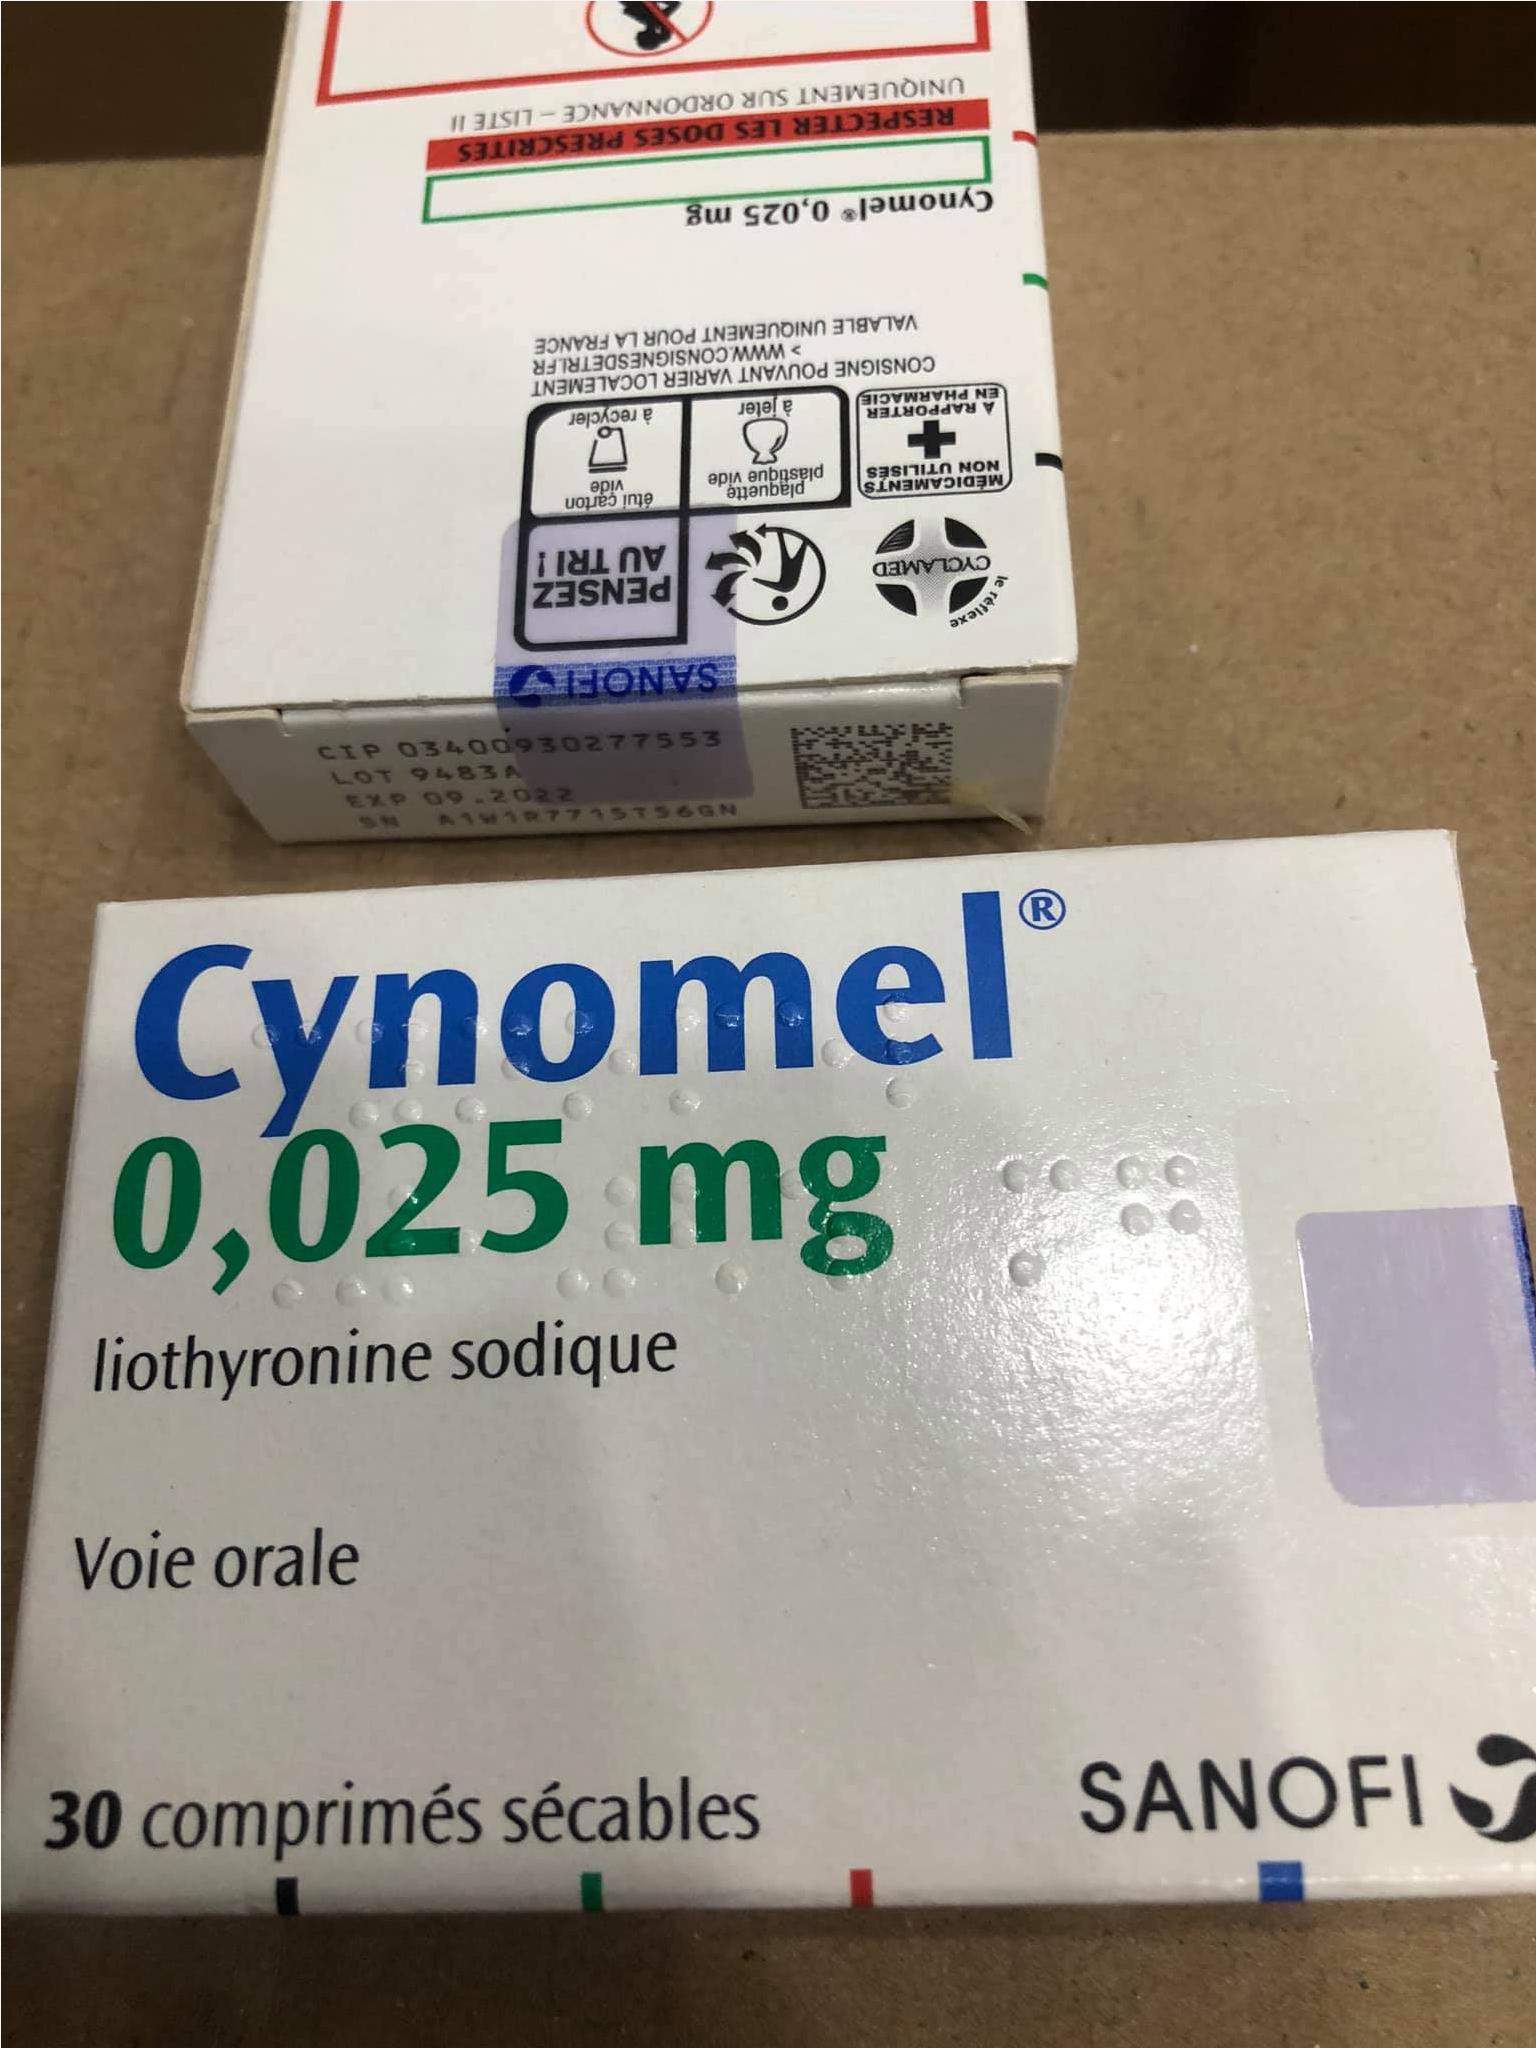 Thuốc Cynomel 0.025mg Liothyronine giá bao nhiêu mua ở đâu